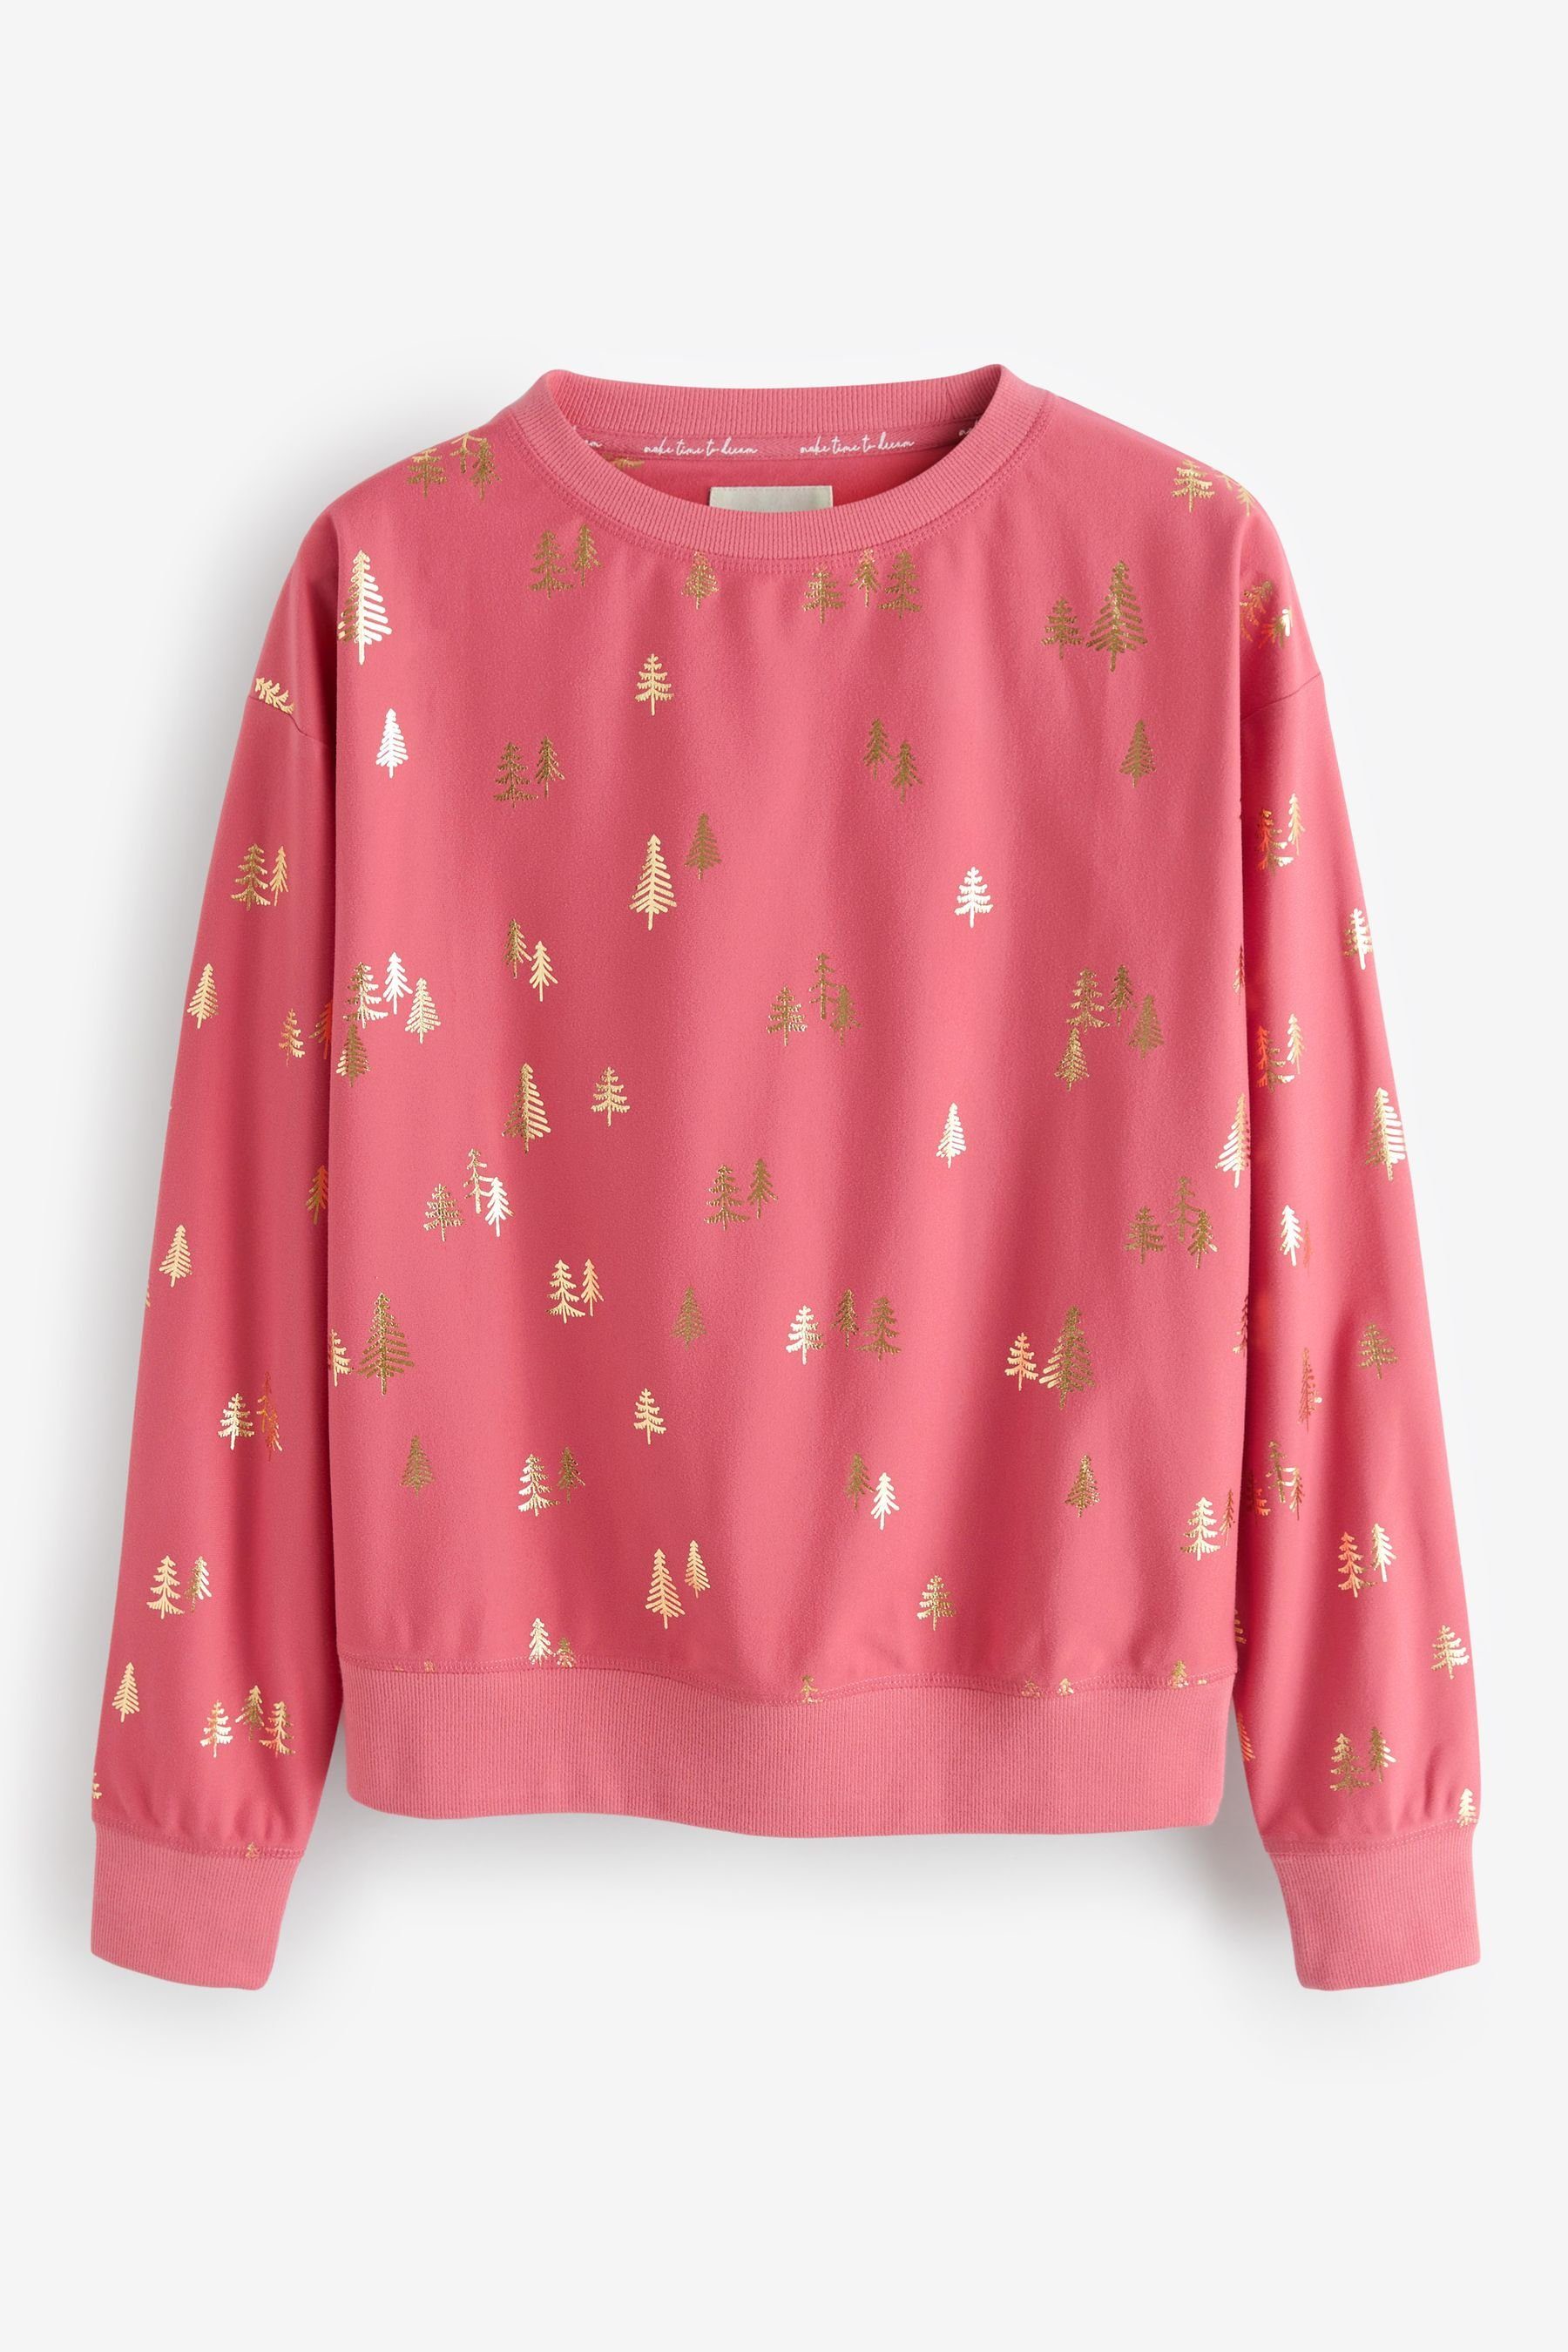 Next Pyjama Bequemer und (2 Pyjama tlg) Pink Coral superweicher Foil